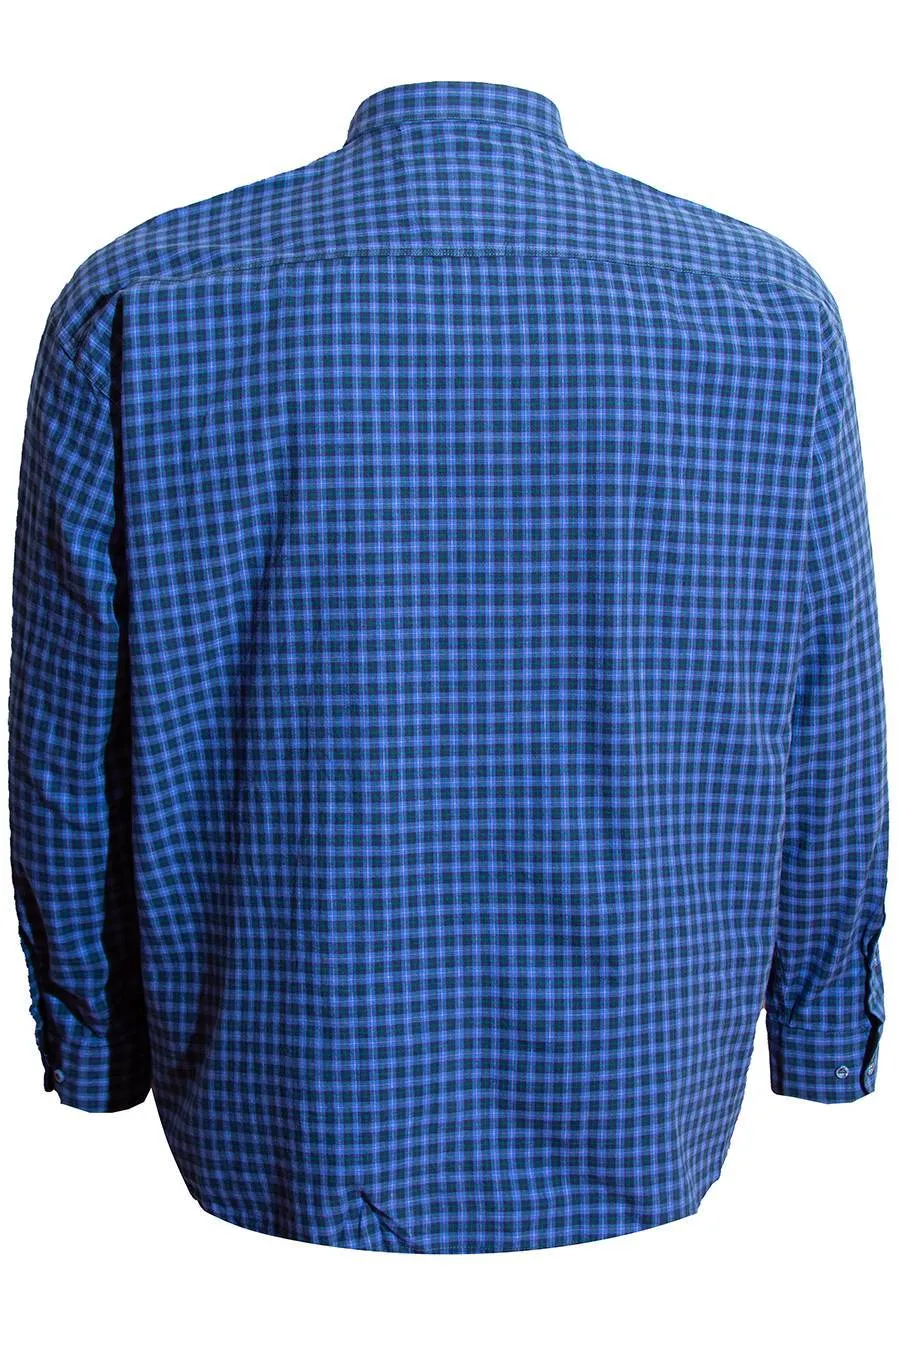 Рубашка в клетку (сине-голубую) большого размера